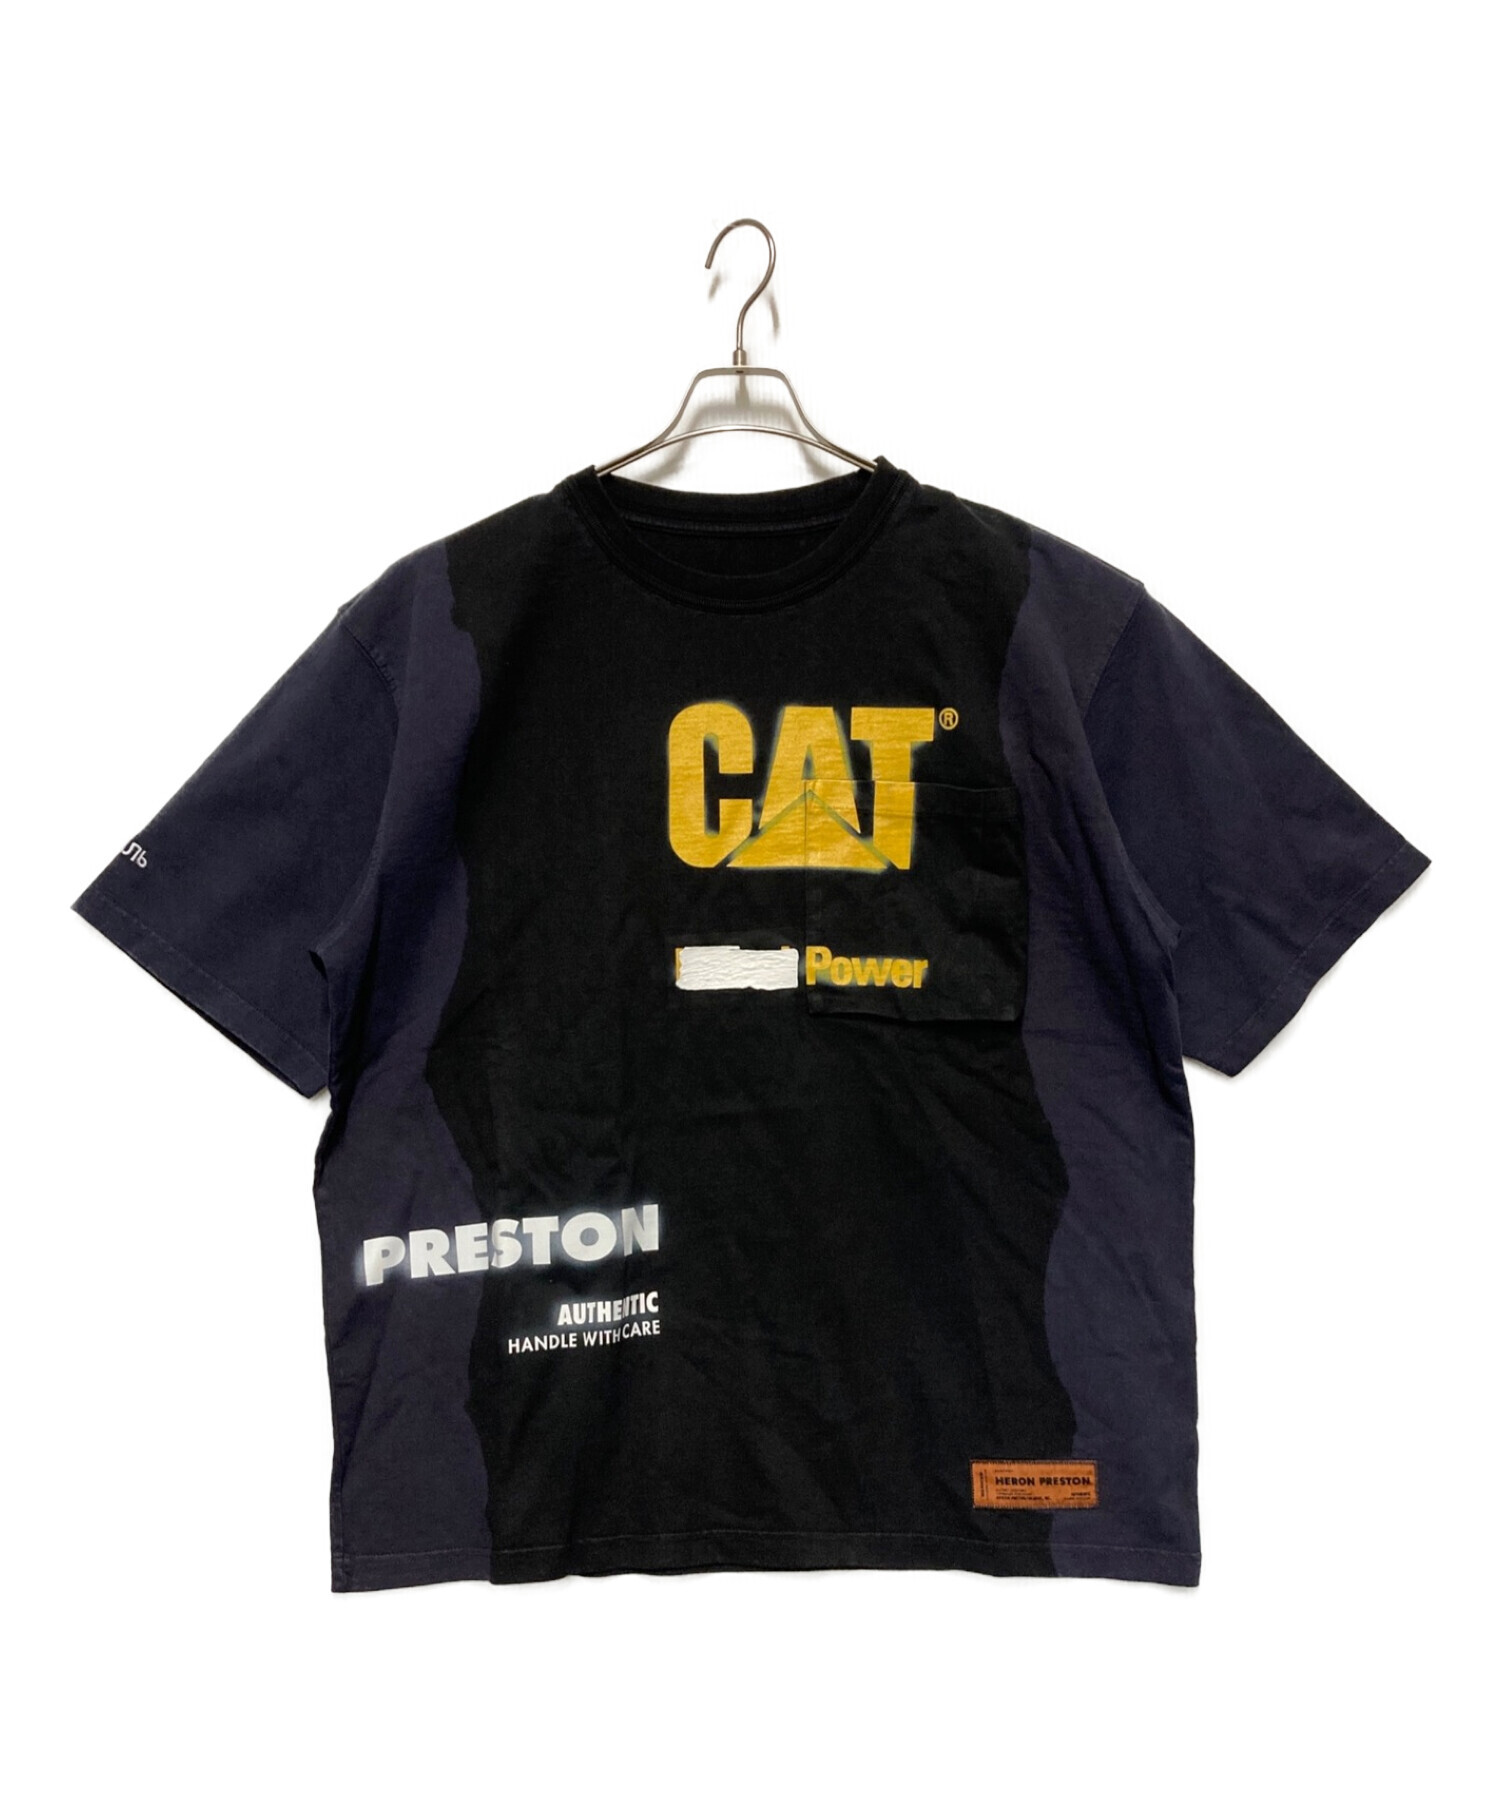 HERON PRESTON (ヘロンプレストン) caterpillar t-shirt ブラック サイズ:L